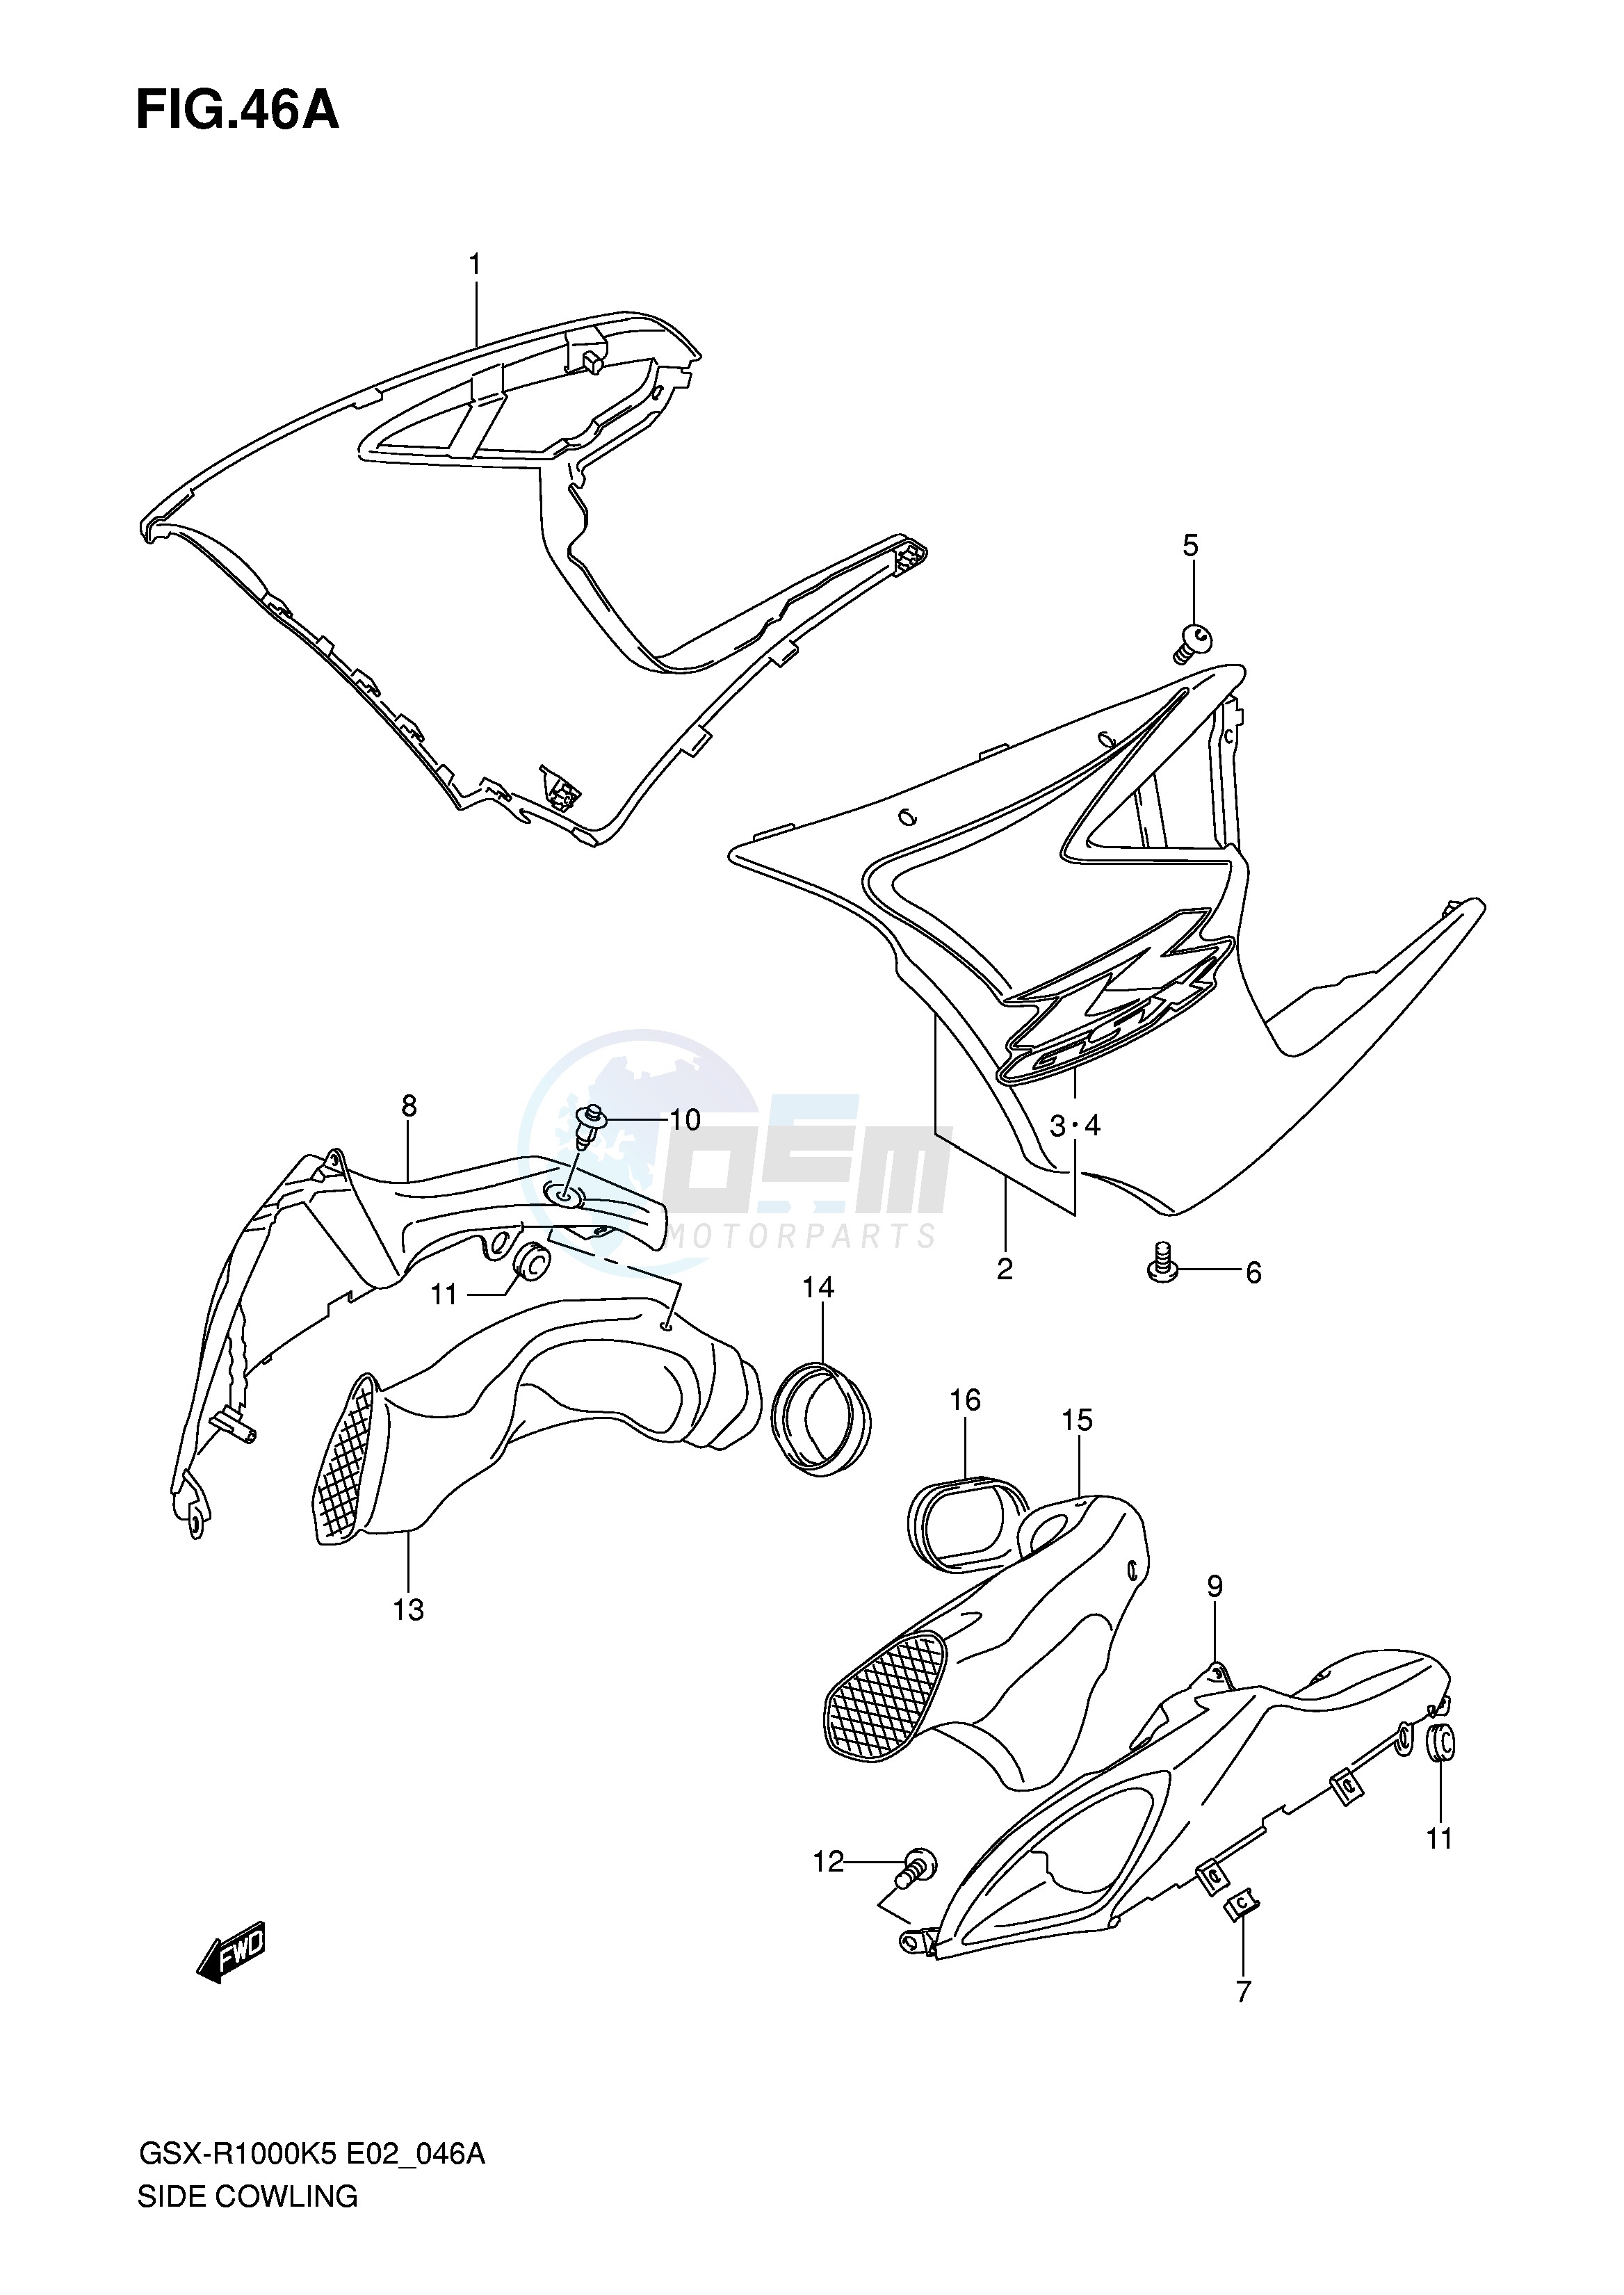 SIDE COWLING (MODEL K6) blueprint